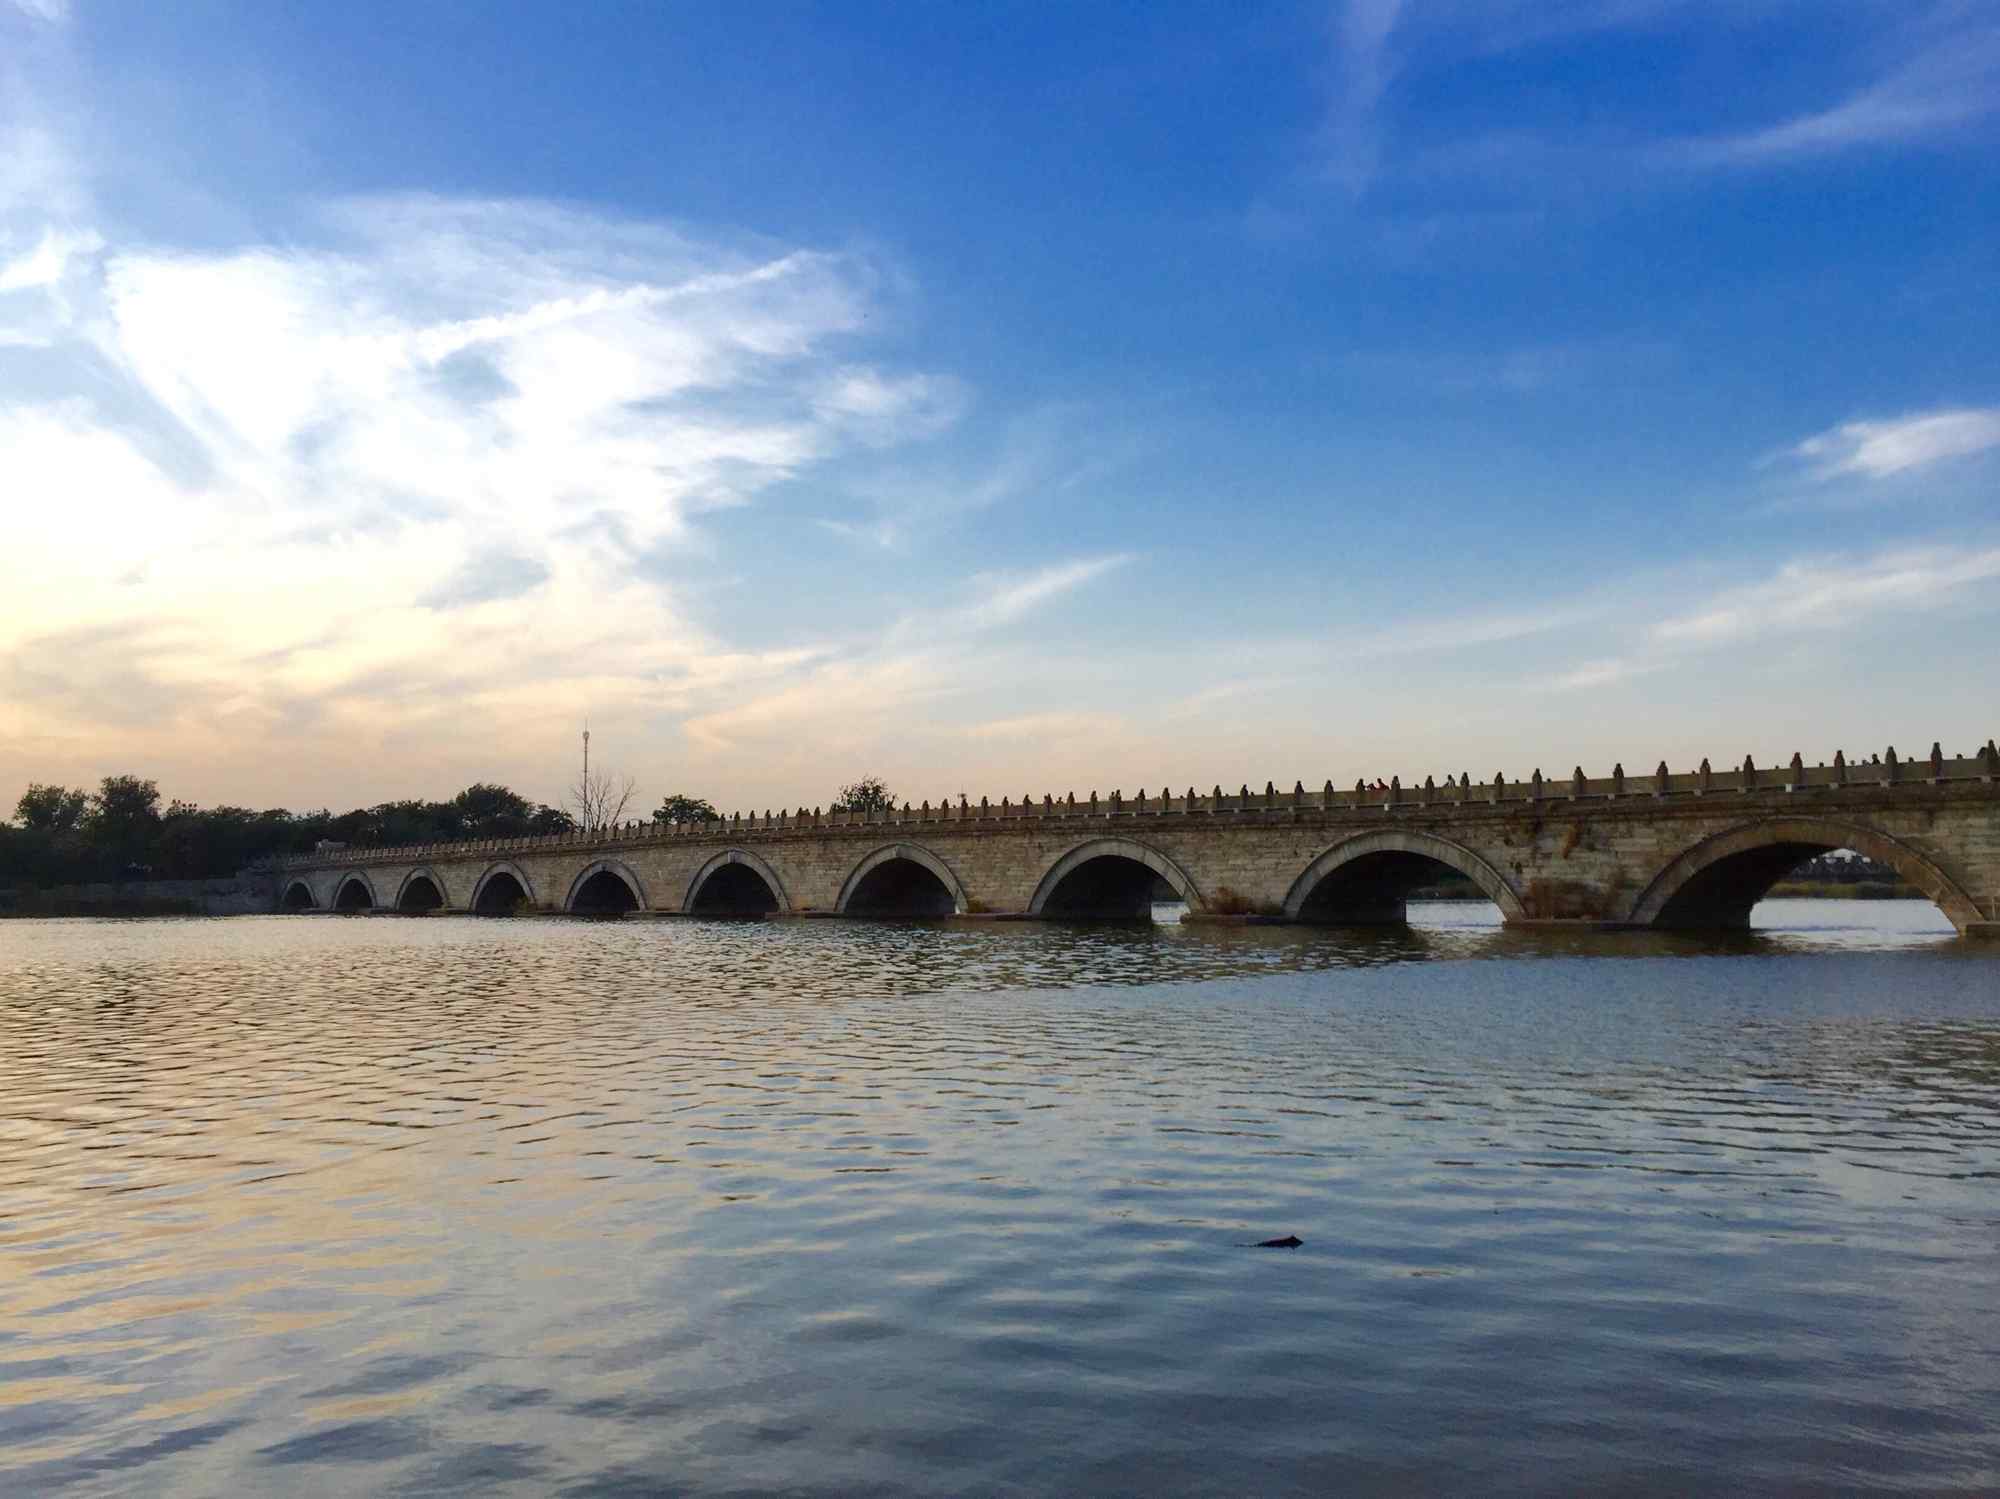 卢沟桥上唯美风景图片